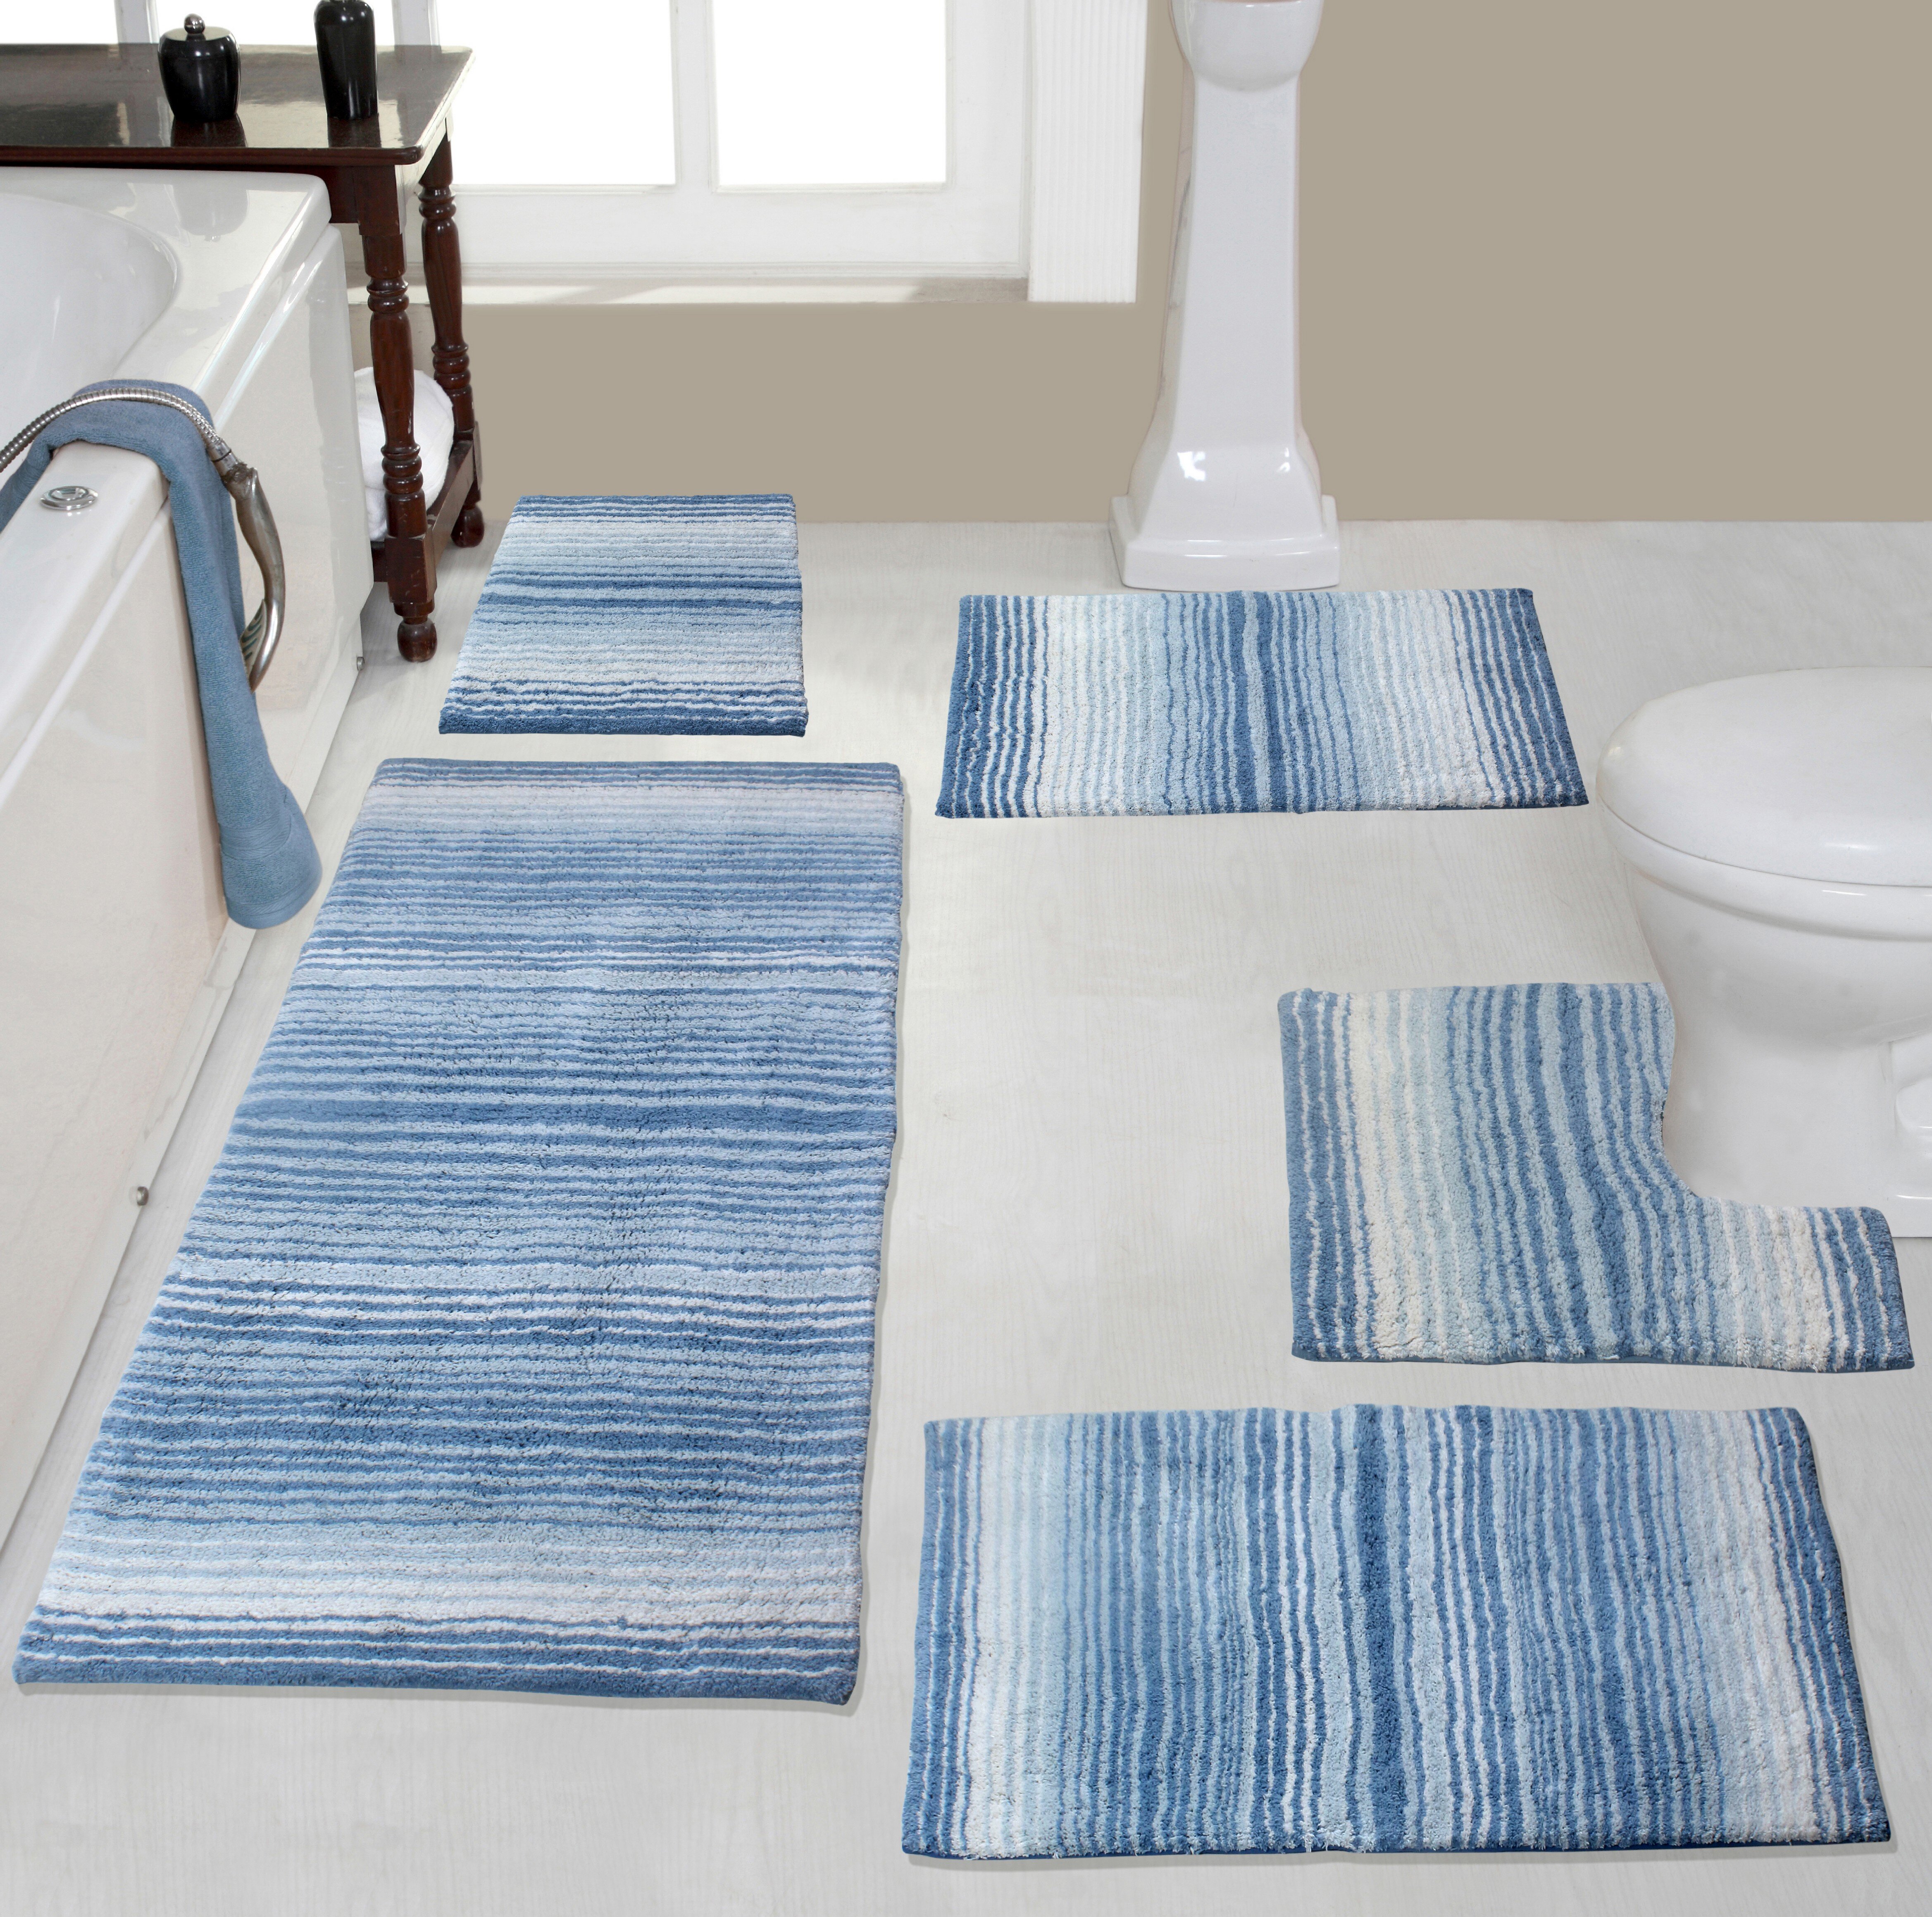 Rapid Water Absorption Non-slip Mat Quick Drying Bathroom Carpet Toilet  Floor Entrance Door Mat Household Rug Home Doormat Pads